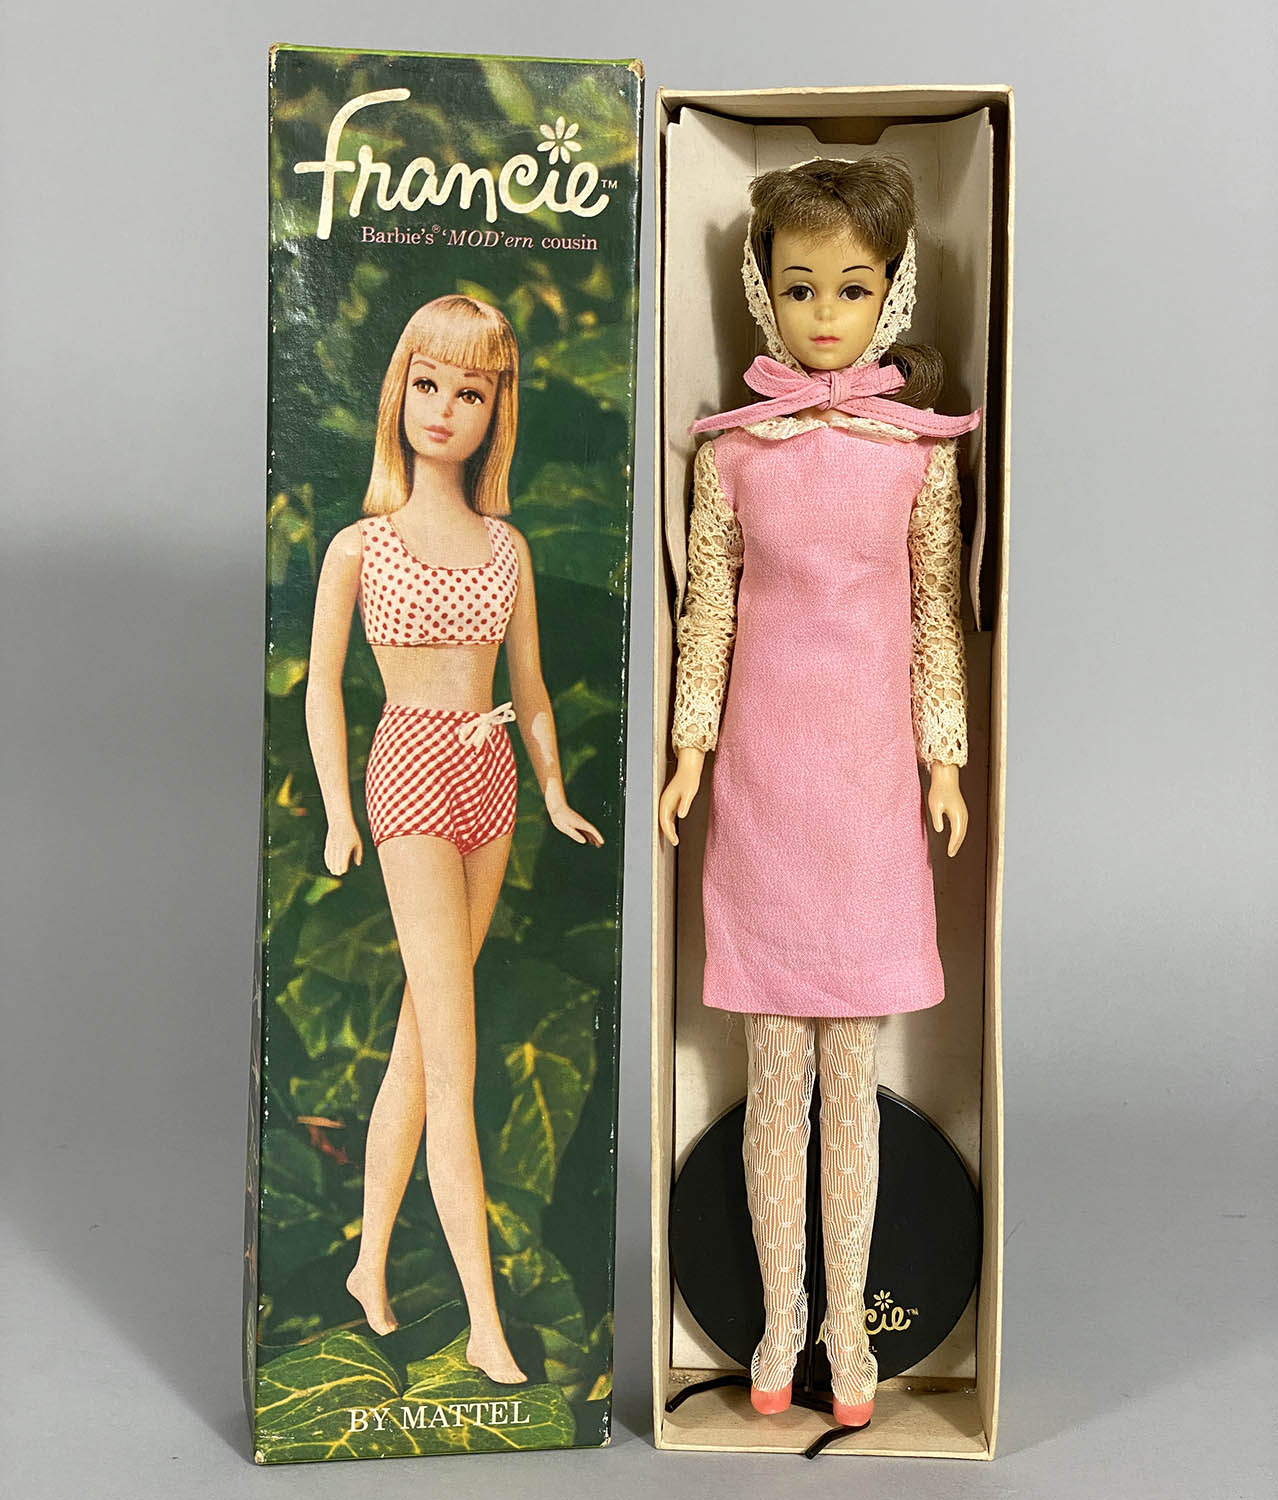 ビンテージバービー人形 フランシー人形 日本仕様のボディーとお洋服 